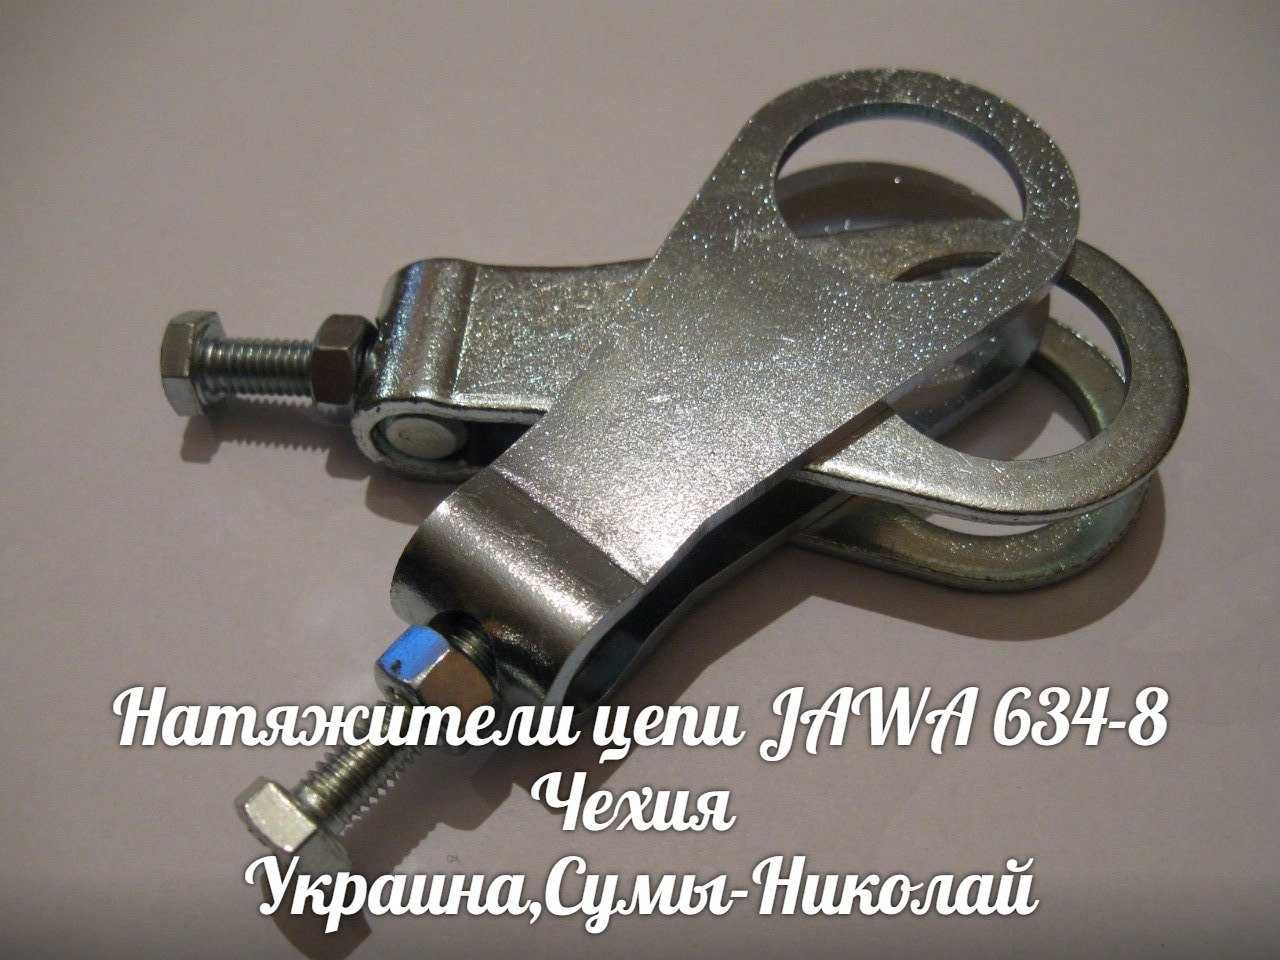 Натяжители цепи ЯВА-JAWA 634-638 Made in Czech Republic.
.